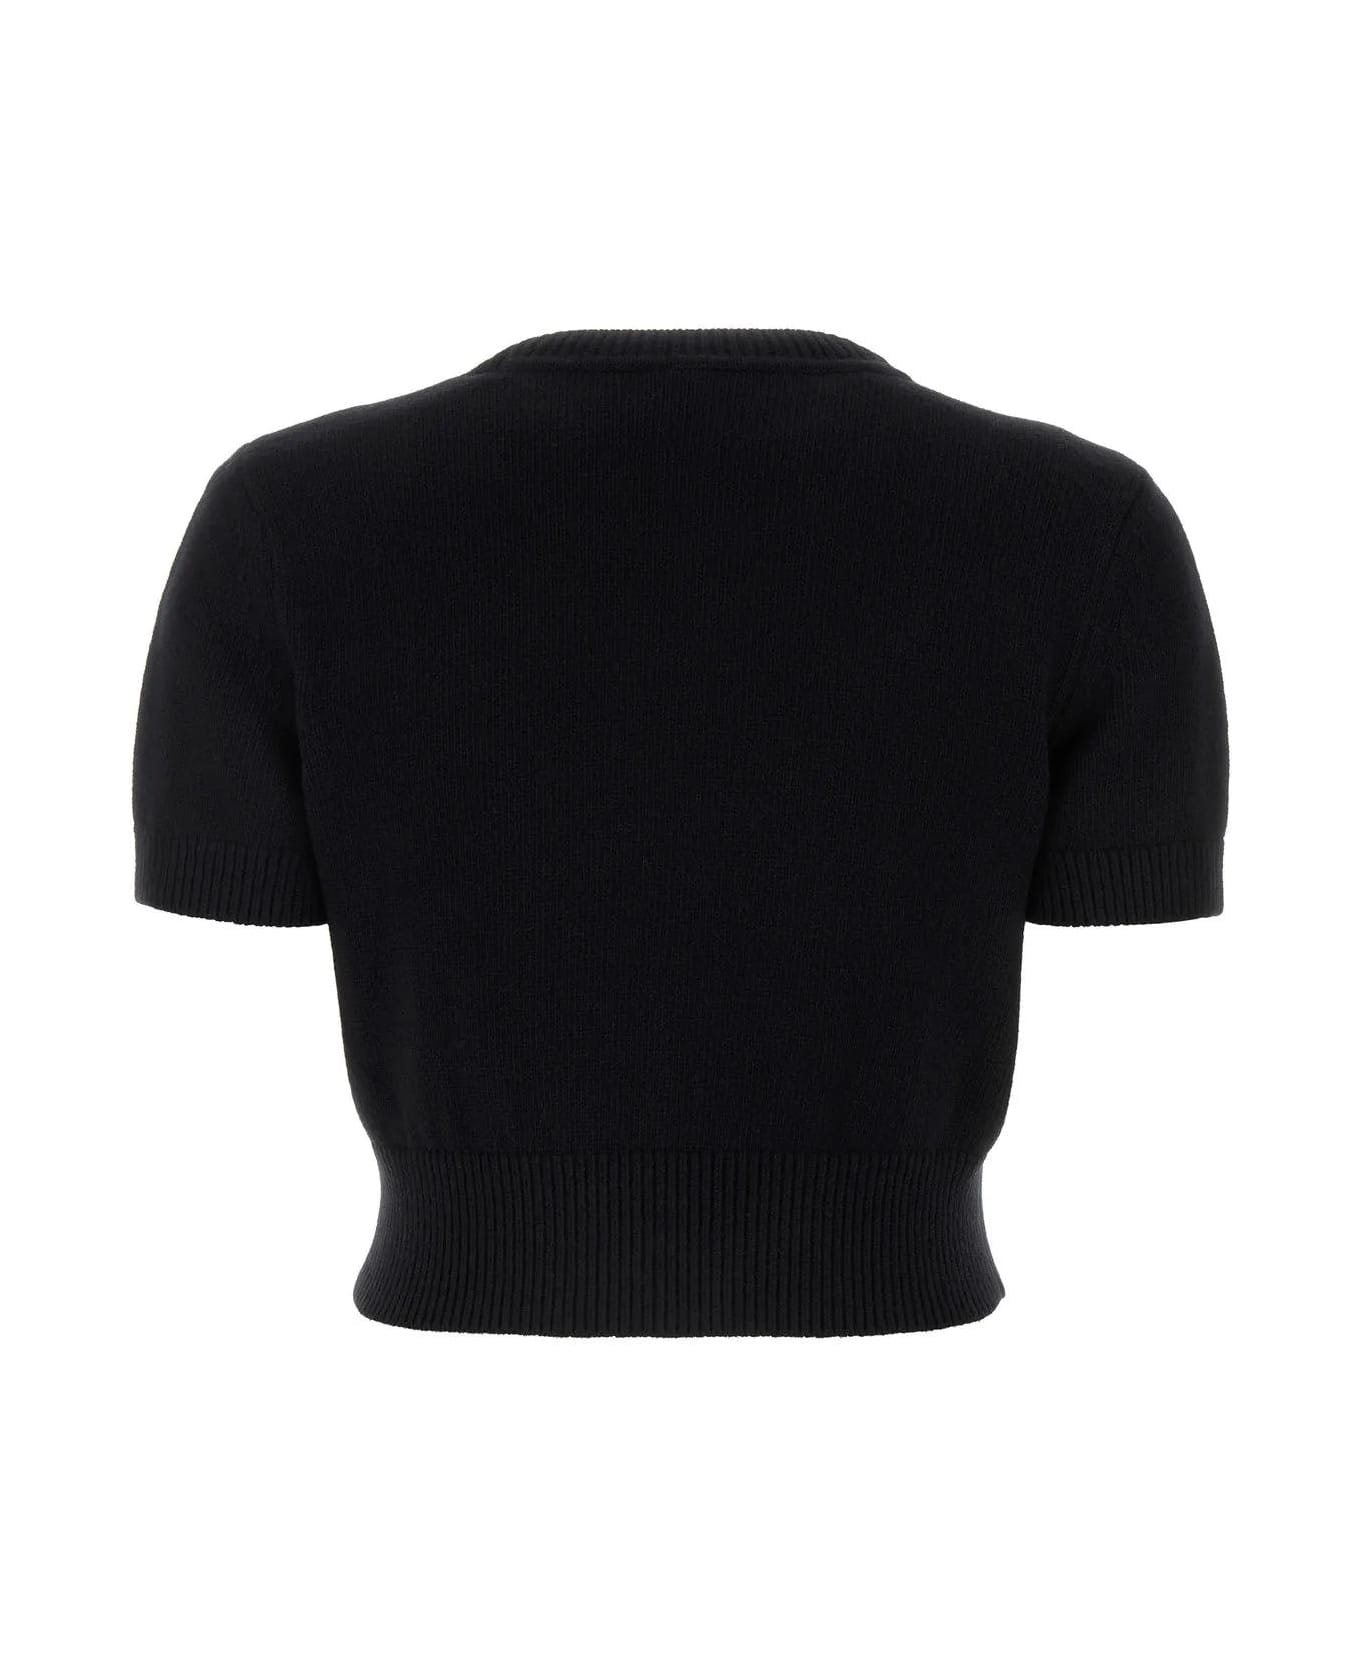 Alexander Wang Black Cotton Blend Sweater - Black